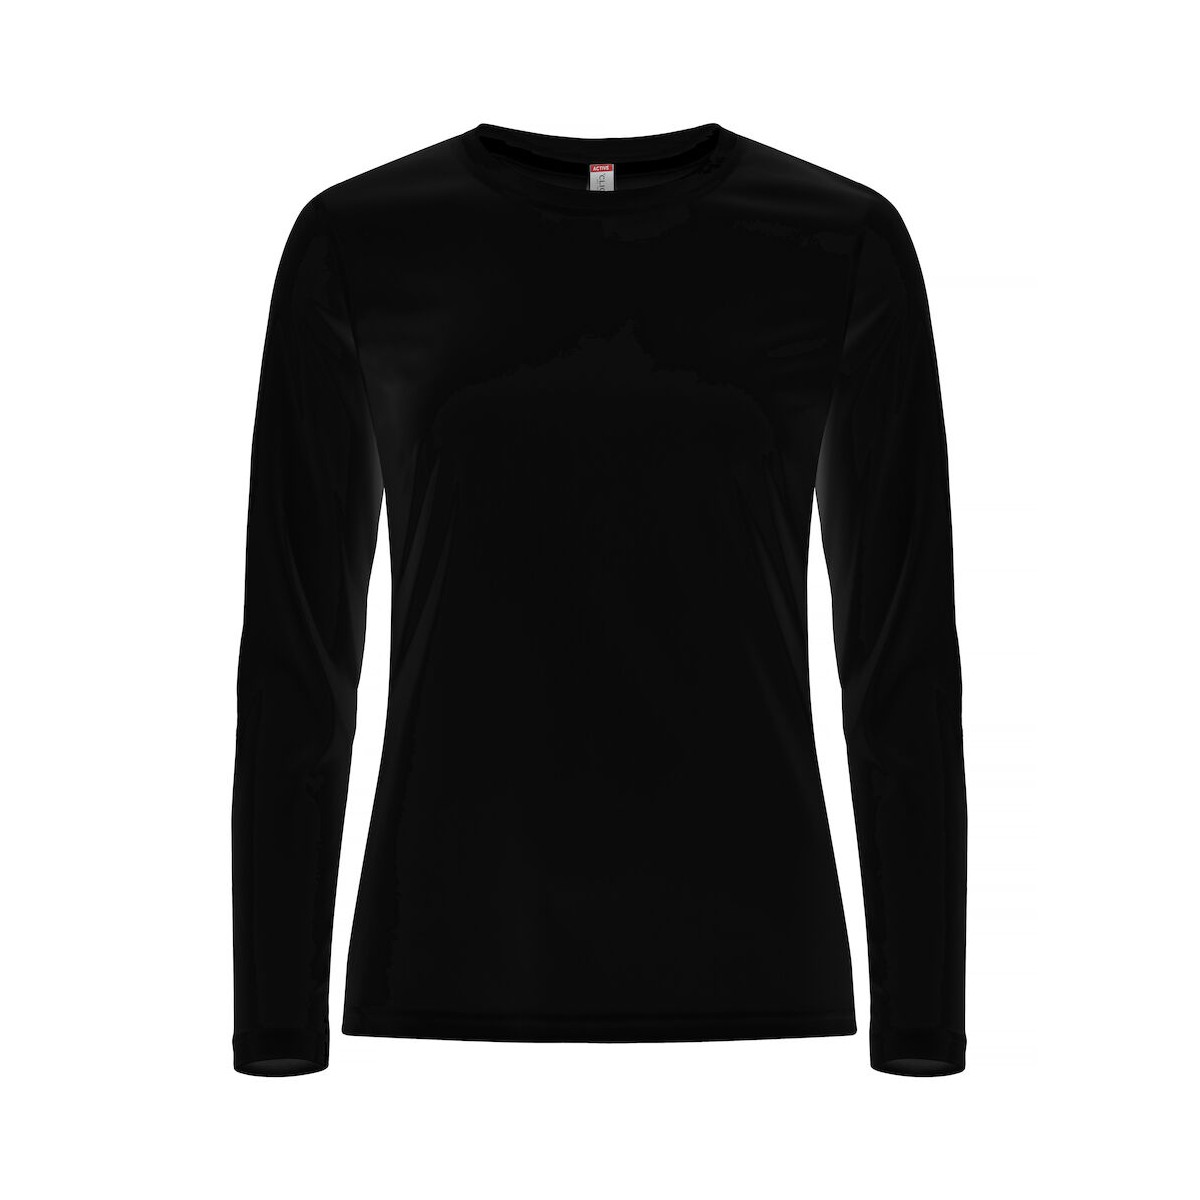 T-shirt 100% polyester - Coupe femme - Manches longues - Clique - Personnalisable en petite quantité - Couleur